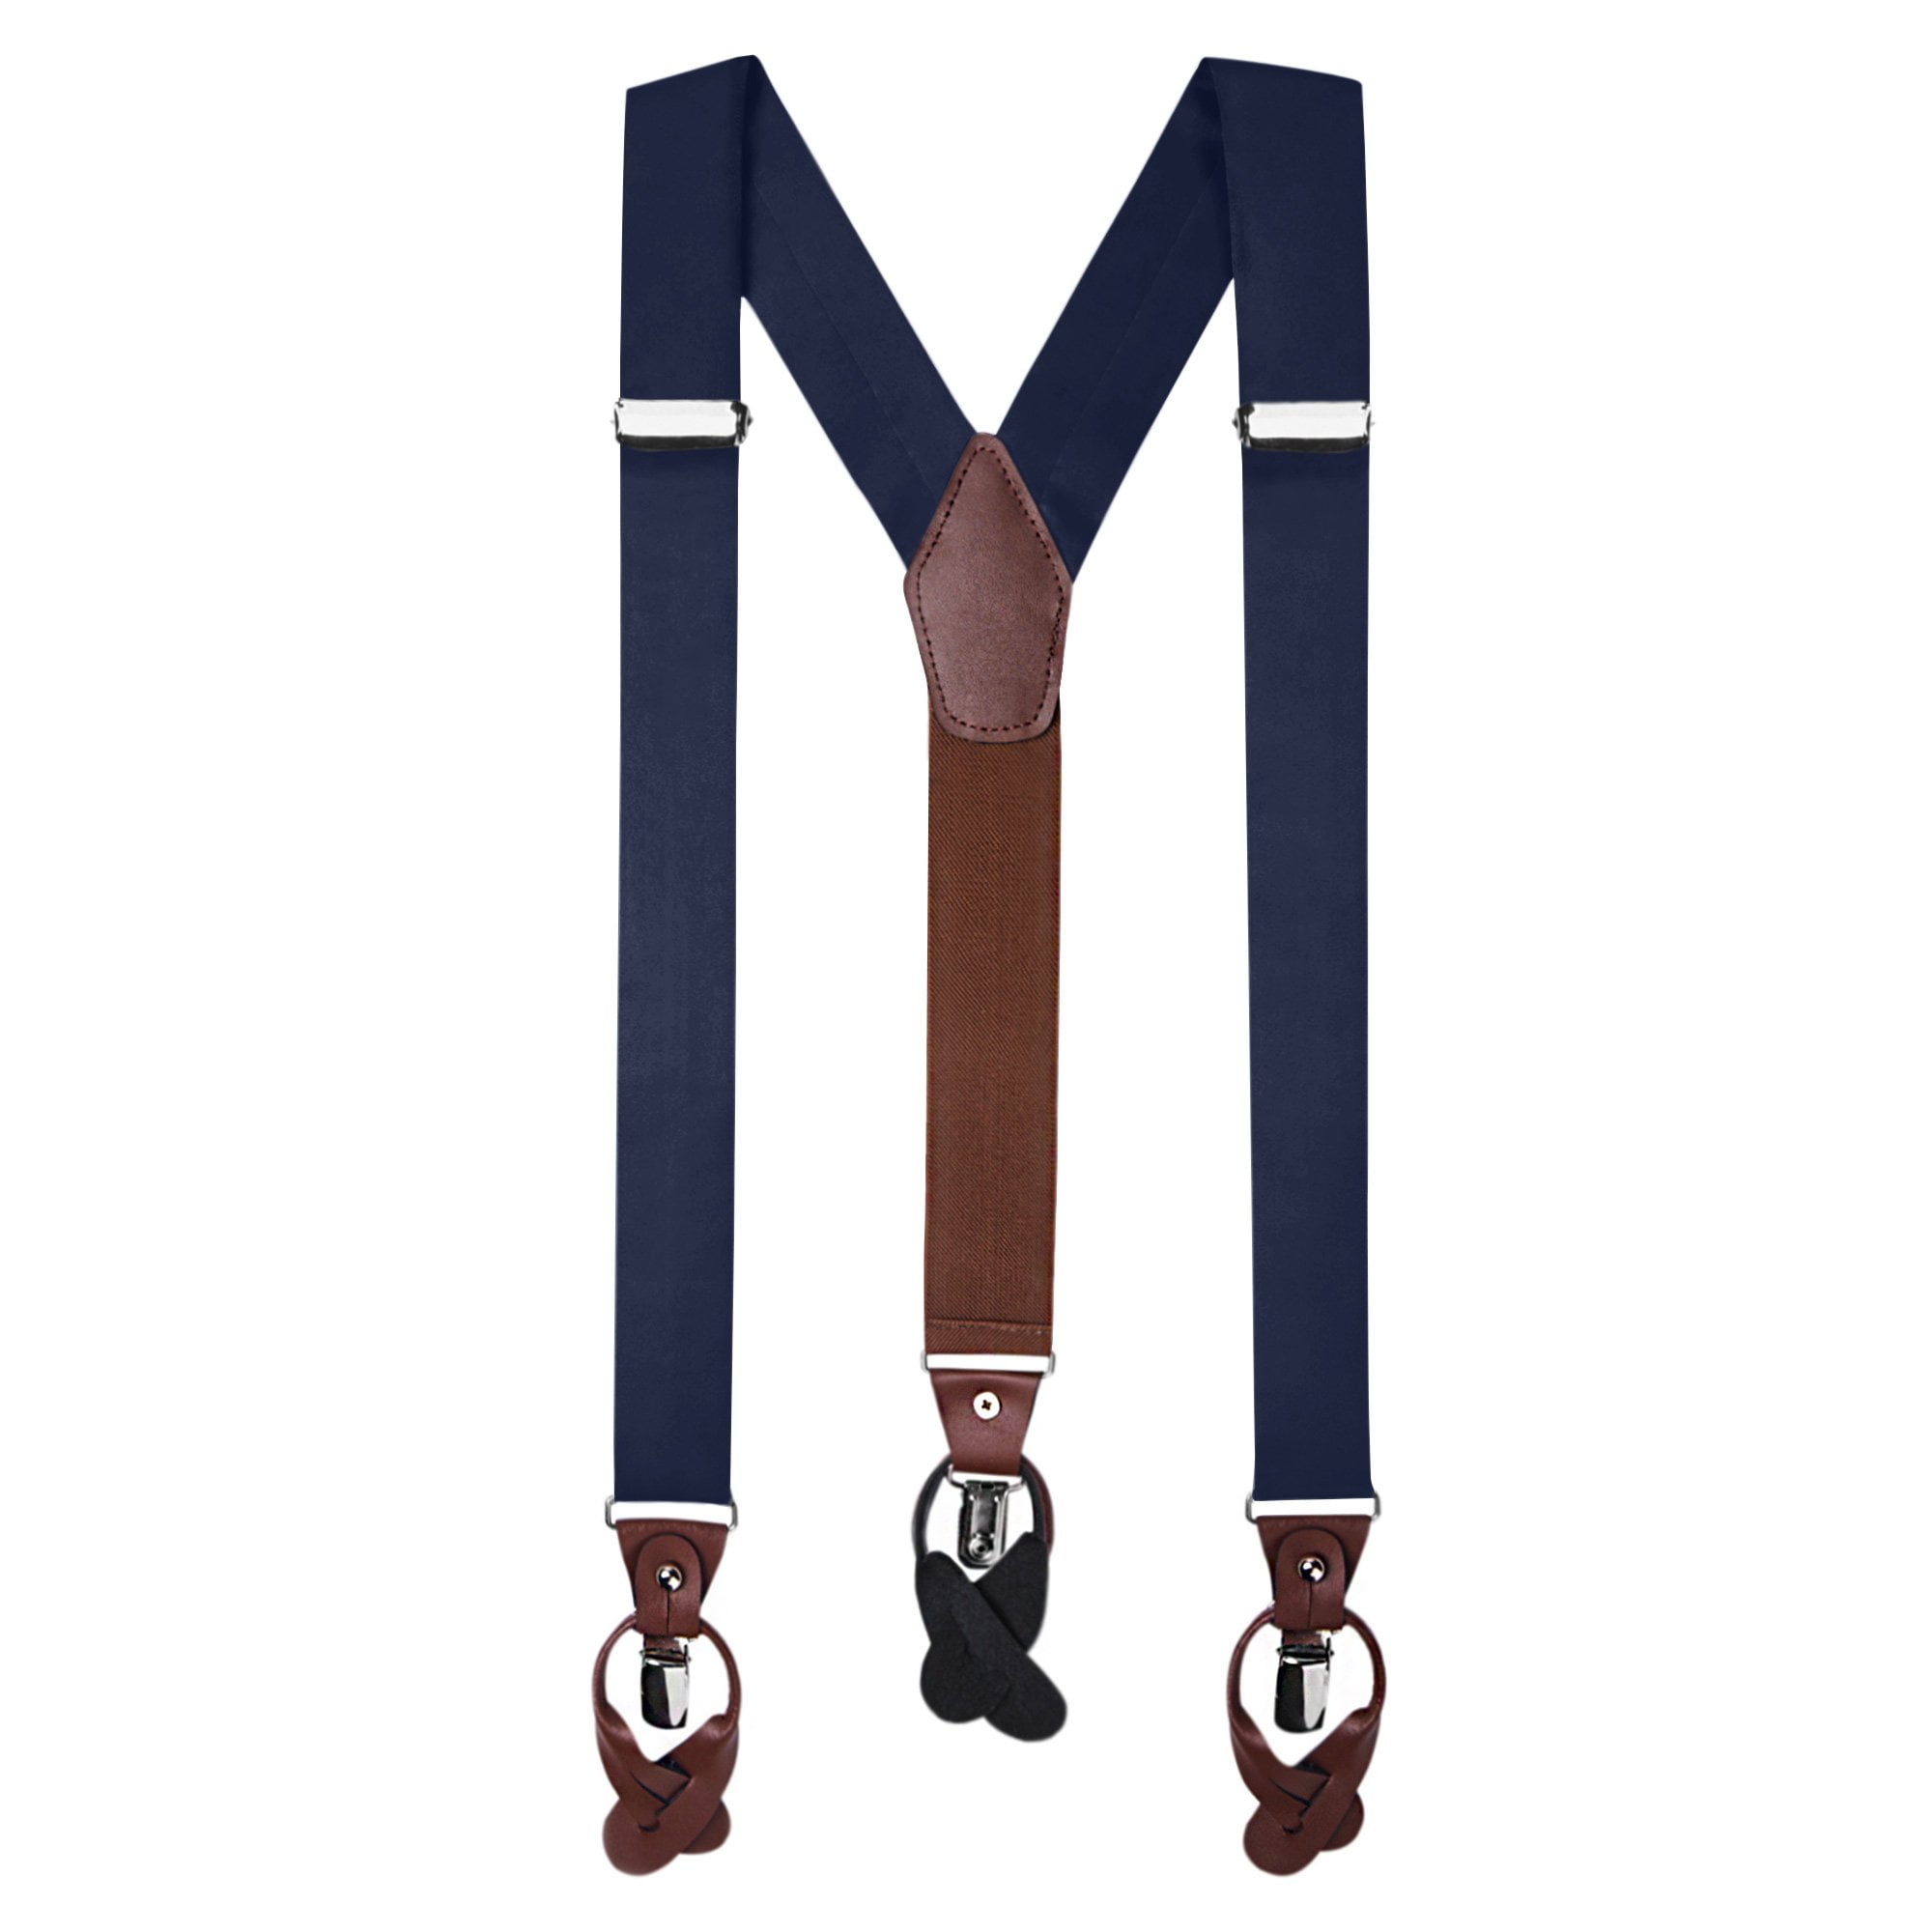 Jacob Alexander Men's Solid Fabric Suspenders Braces Convertible